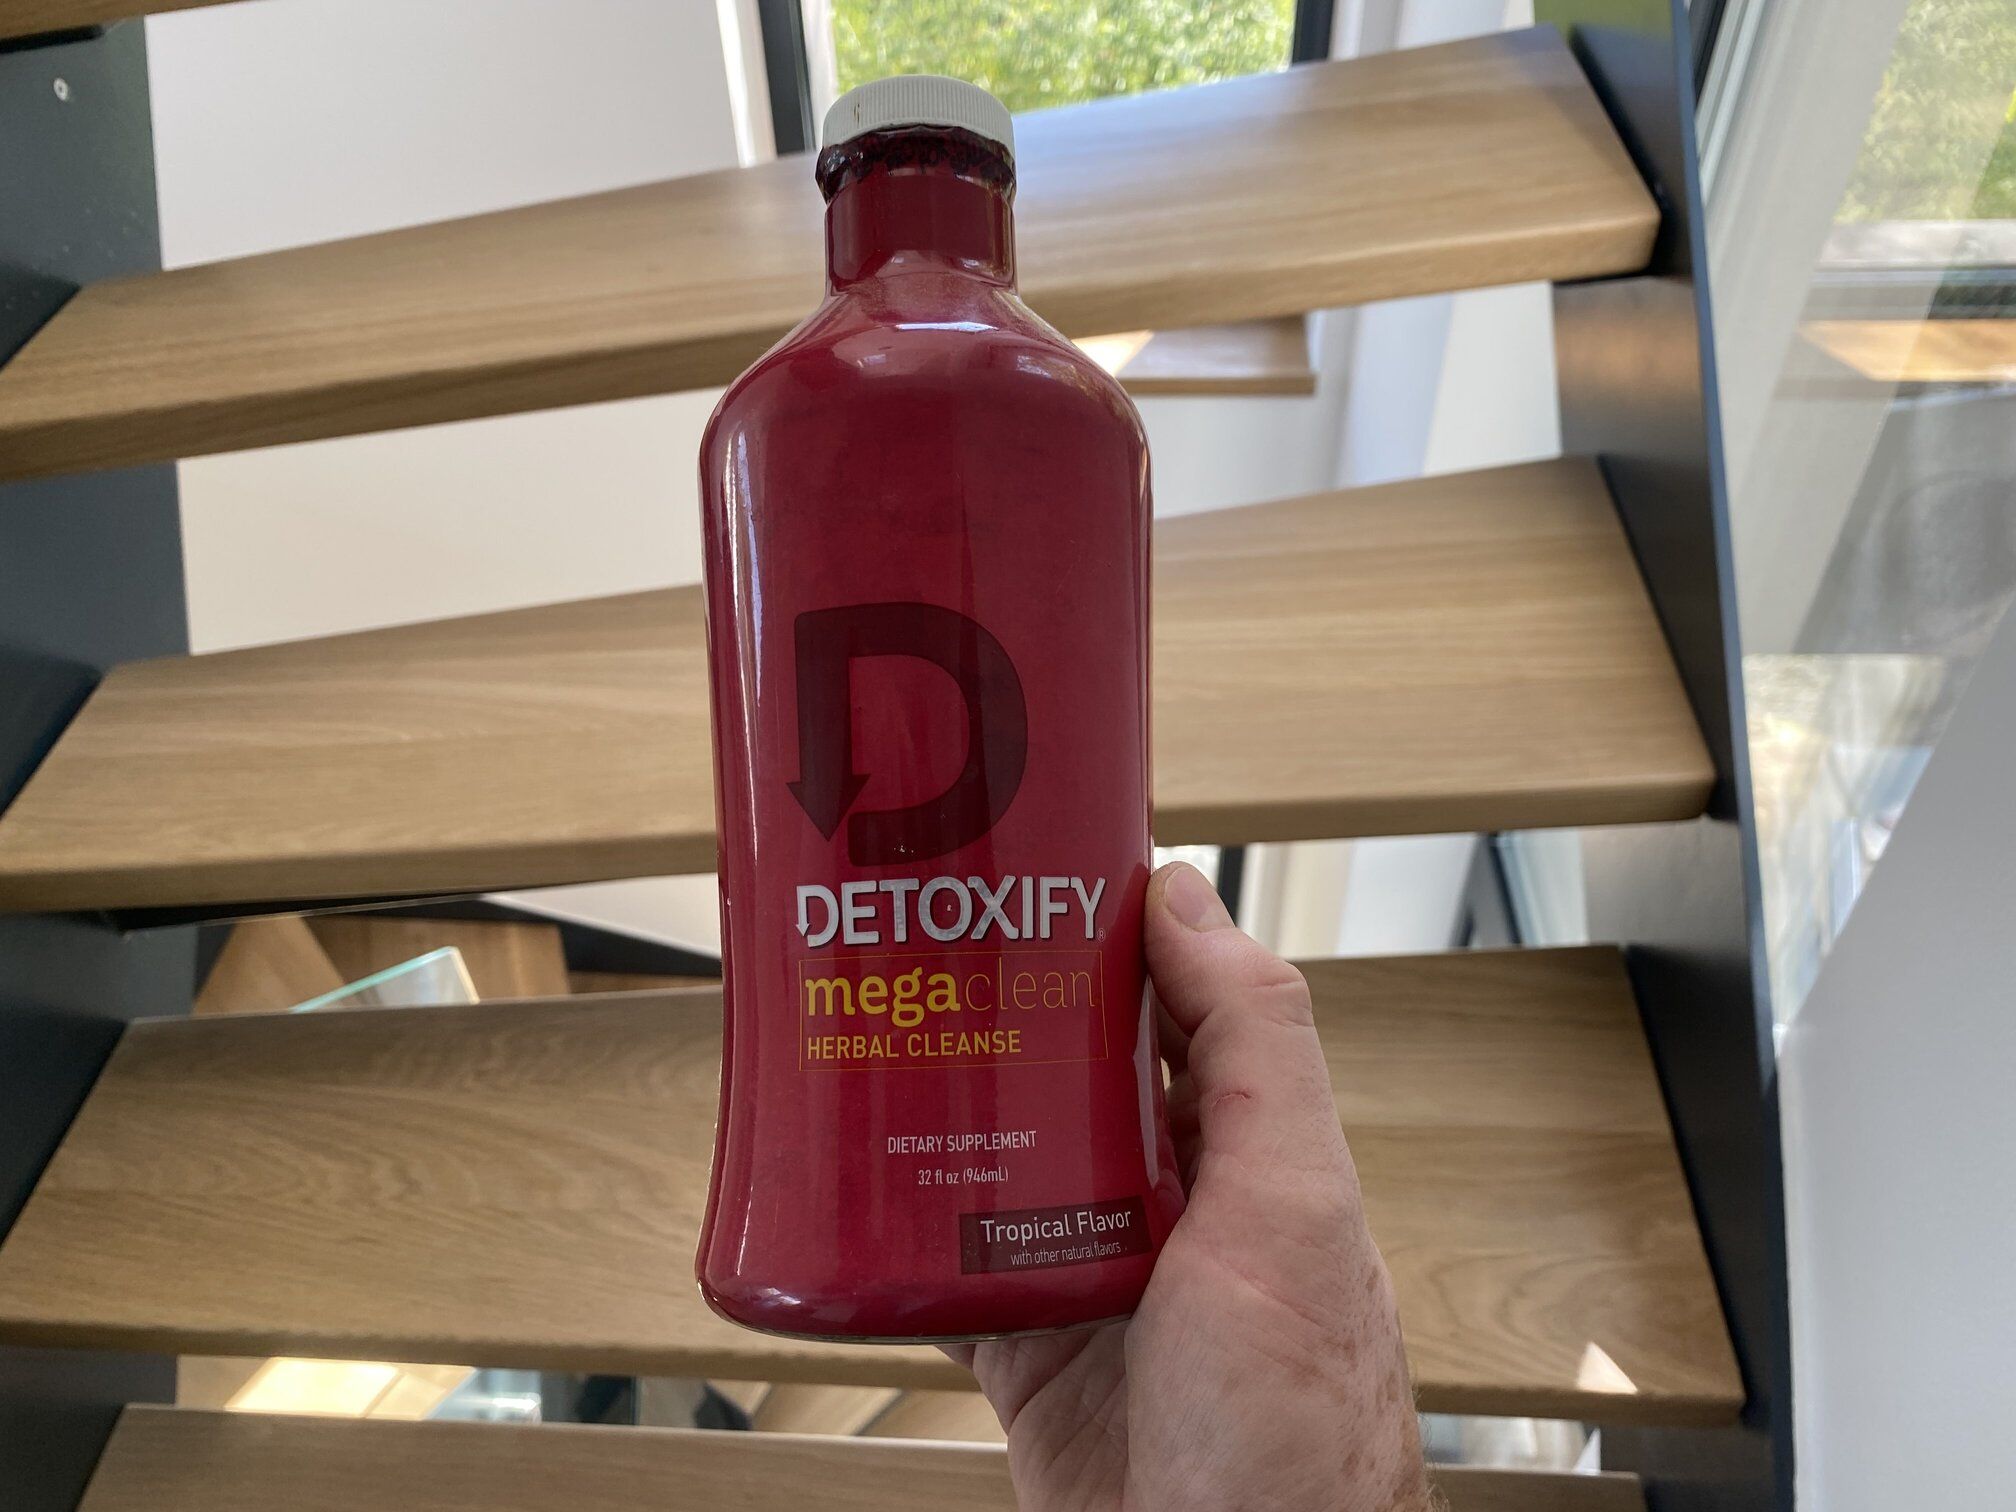 Detoxify mega clean detox review